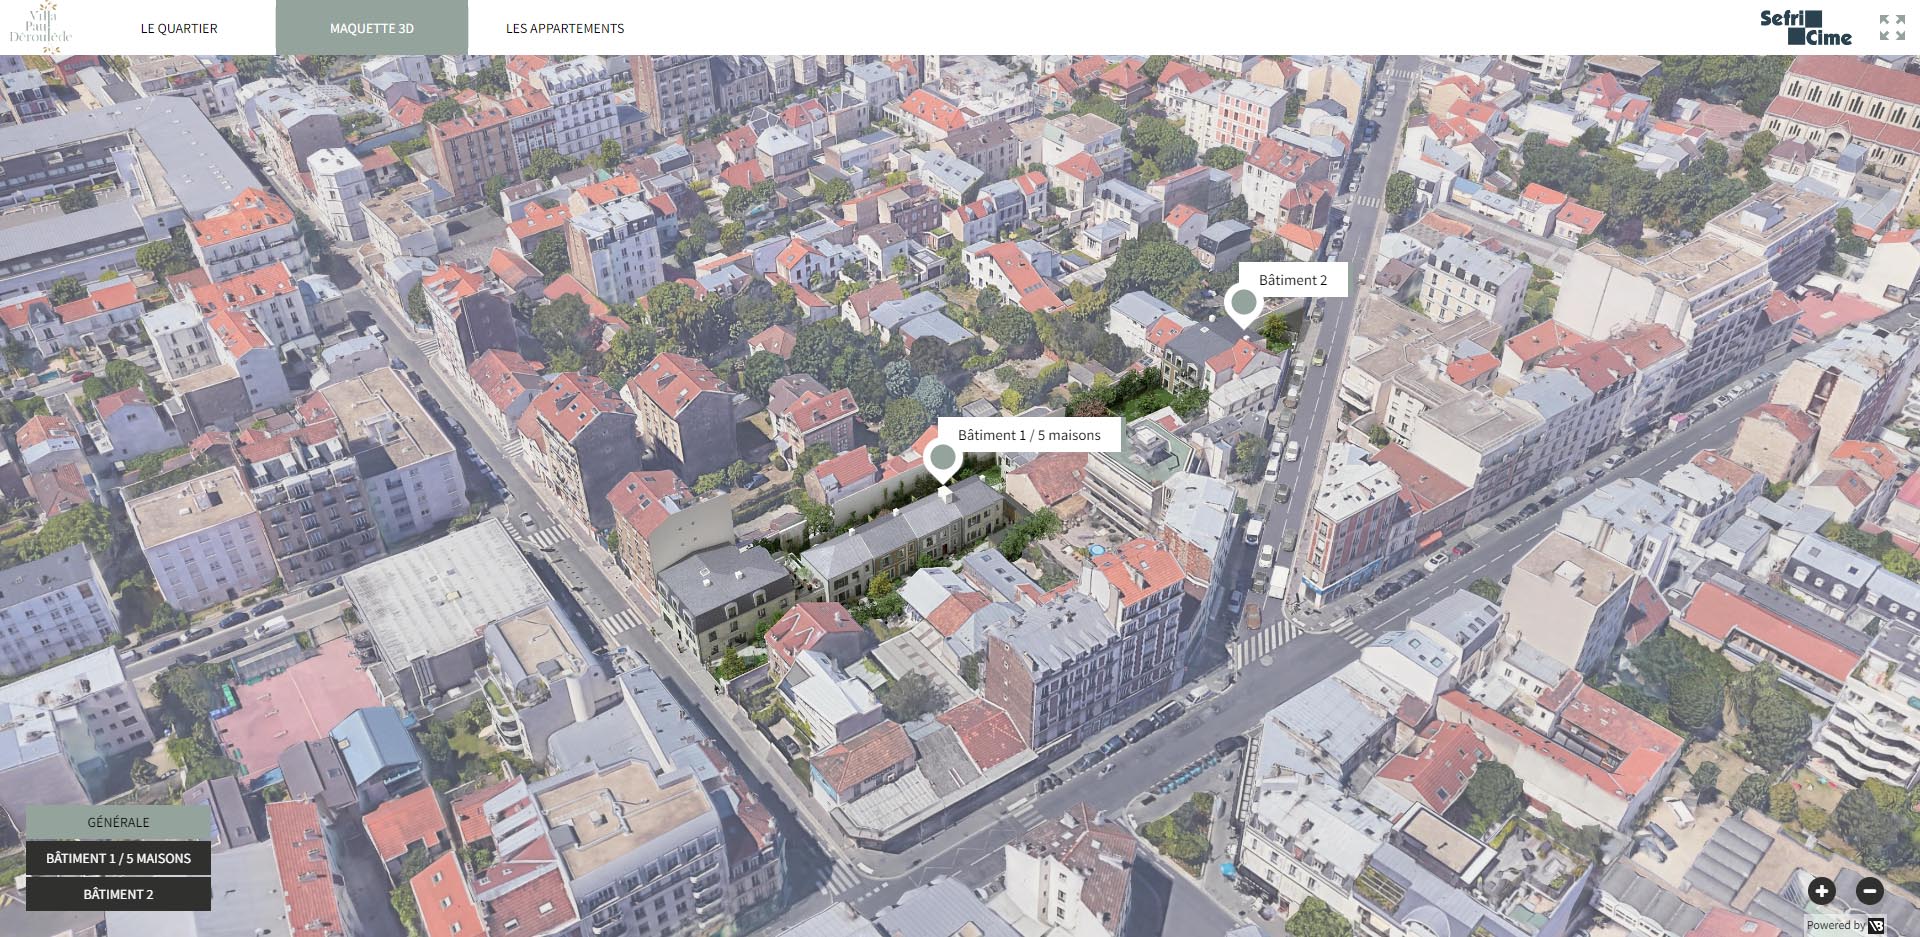 Villa Paul Déroulède - SEFRI CIME - 3D Viewer - Photolocalisation 360°